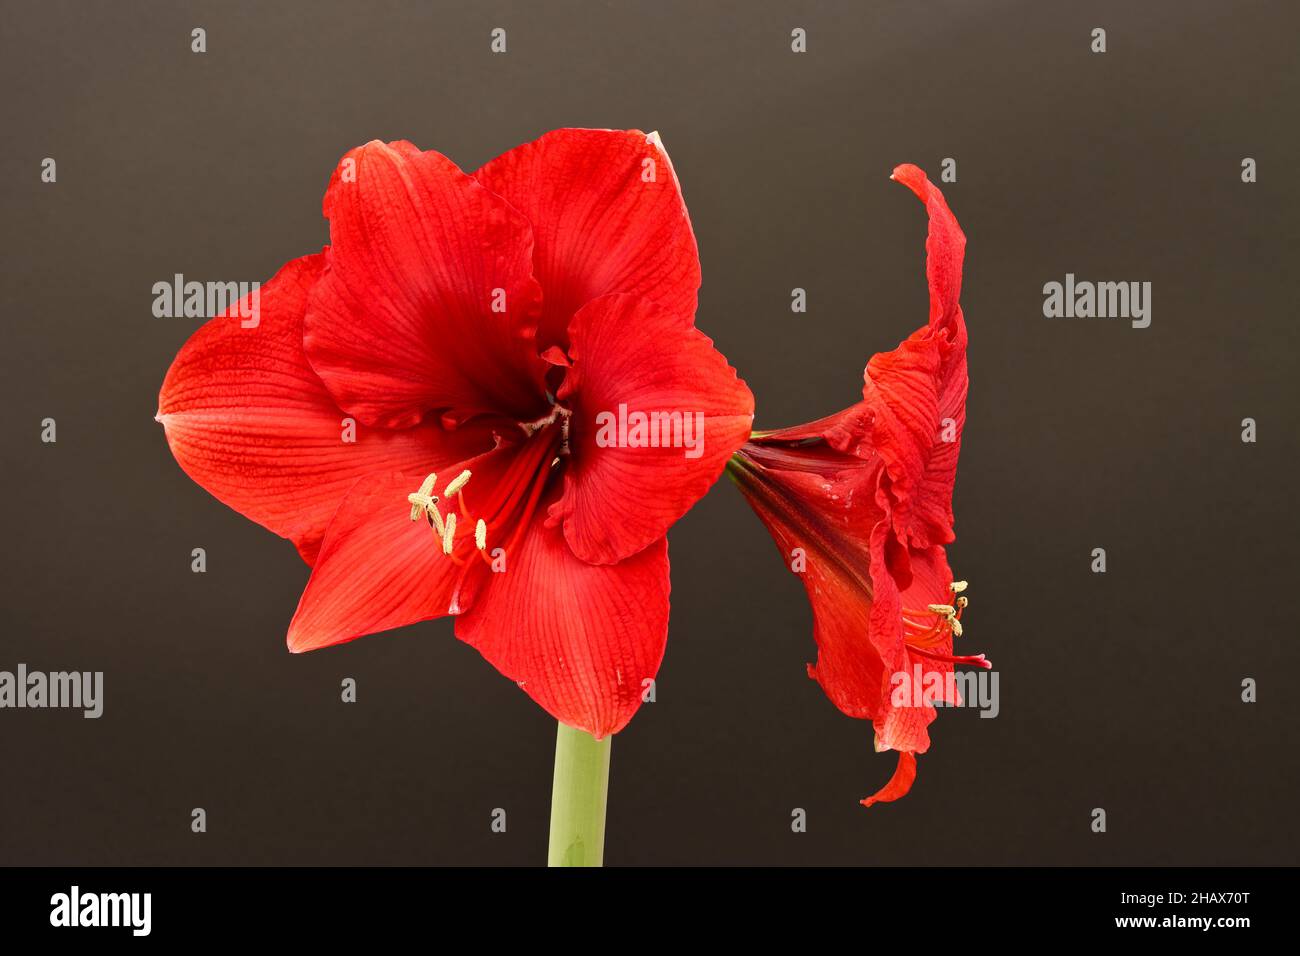 Résultat de l'empilement de la mise au point d'une fleur incroyable Hippeastrum (parfois mal appelé Amaryllis) Banque D'Images